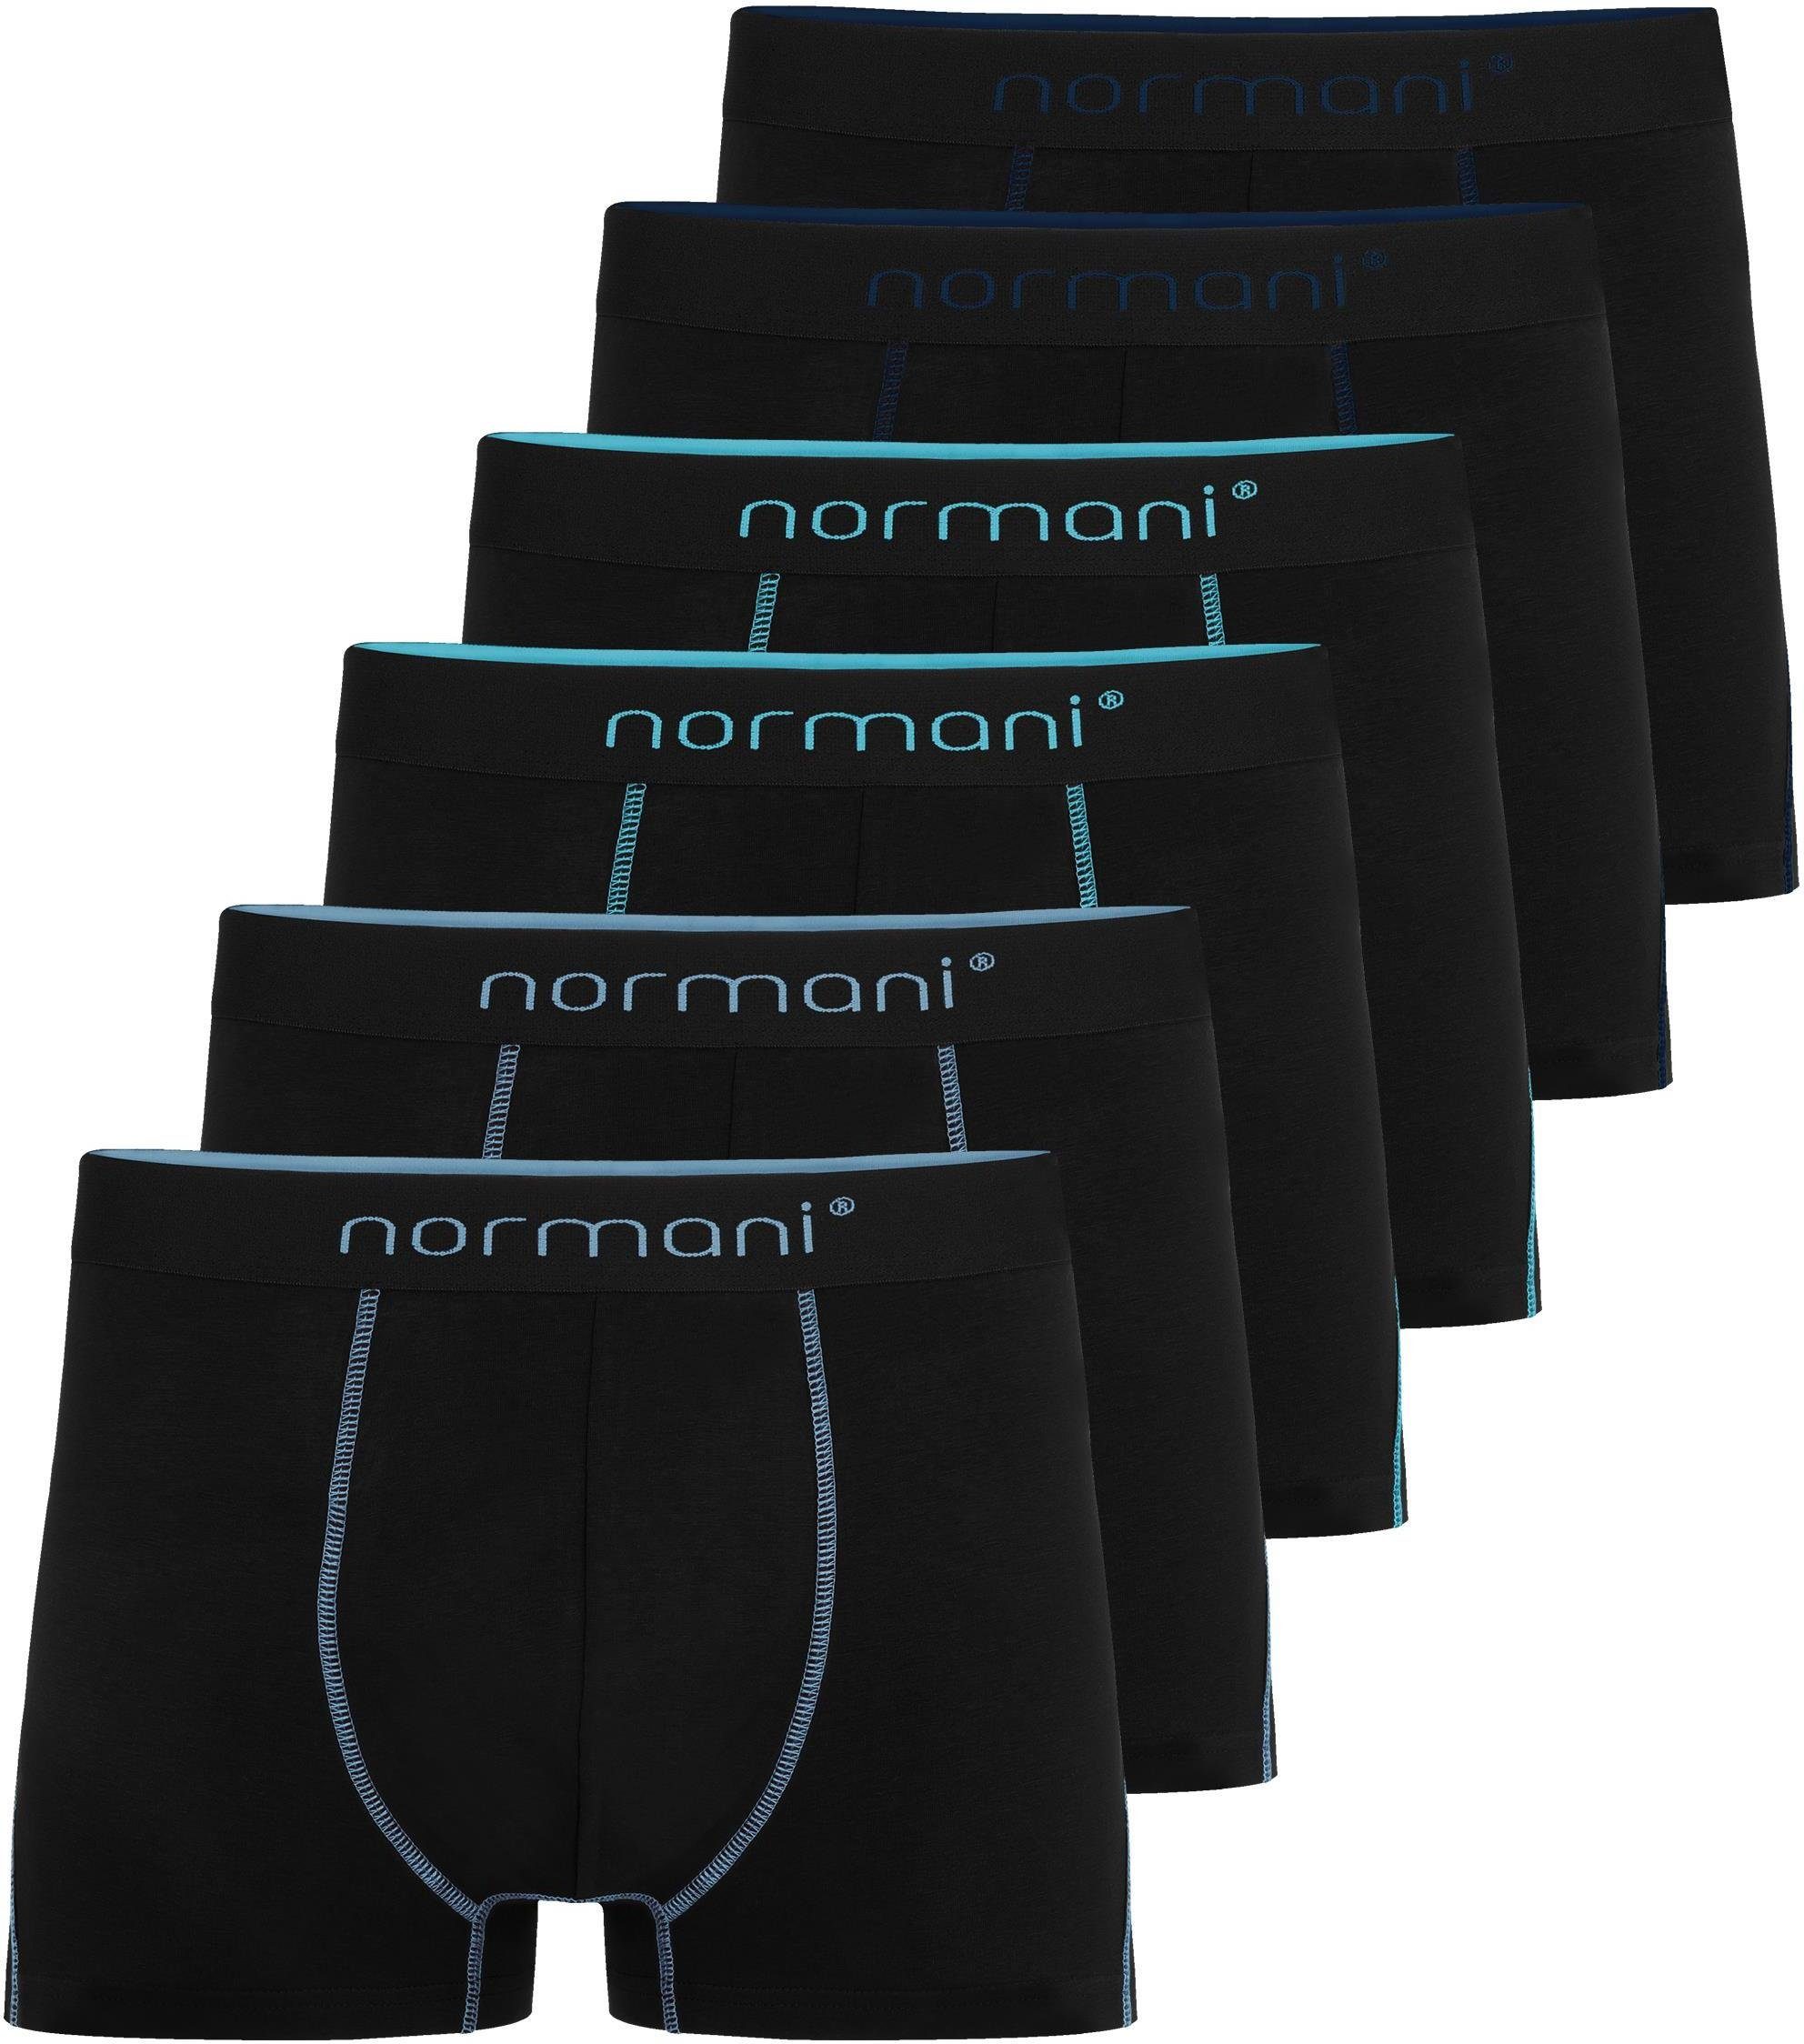 normani Boxershorts 6x Herren Baumwoll-Boxershorts Unterhose aus atmungsaktiver Baumwolle für Männer Dunkelblau/Hellblau/Türkis